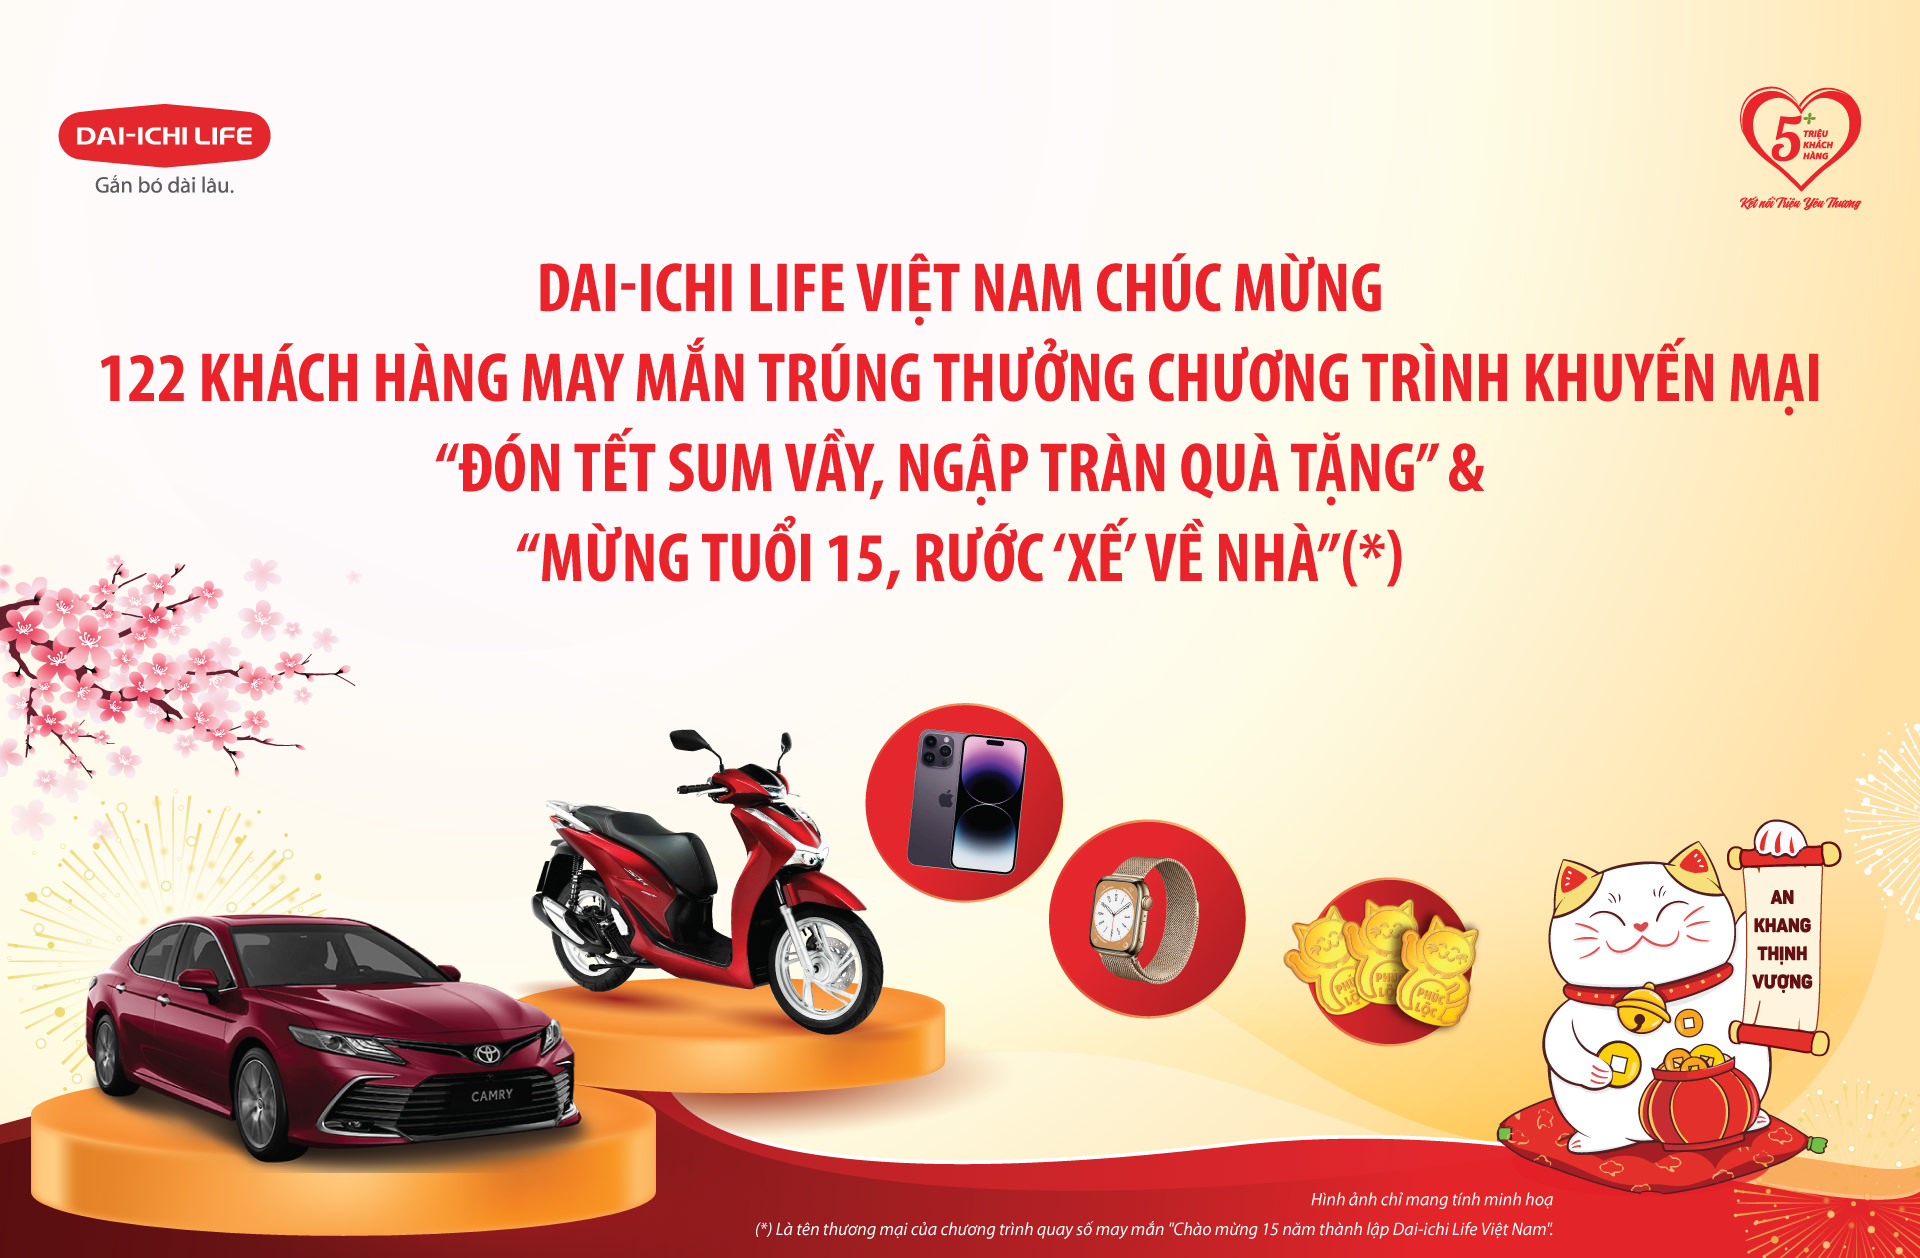 Dai-ichi Life Việt Nam công bố kết quả Chương trình khuyến mại “Đón Tết Sum Vầy, Ngập Tràn Quà Tặng” & “Mừng Tuổi 15, Rước ‘Xế‘ Về Nhà”